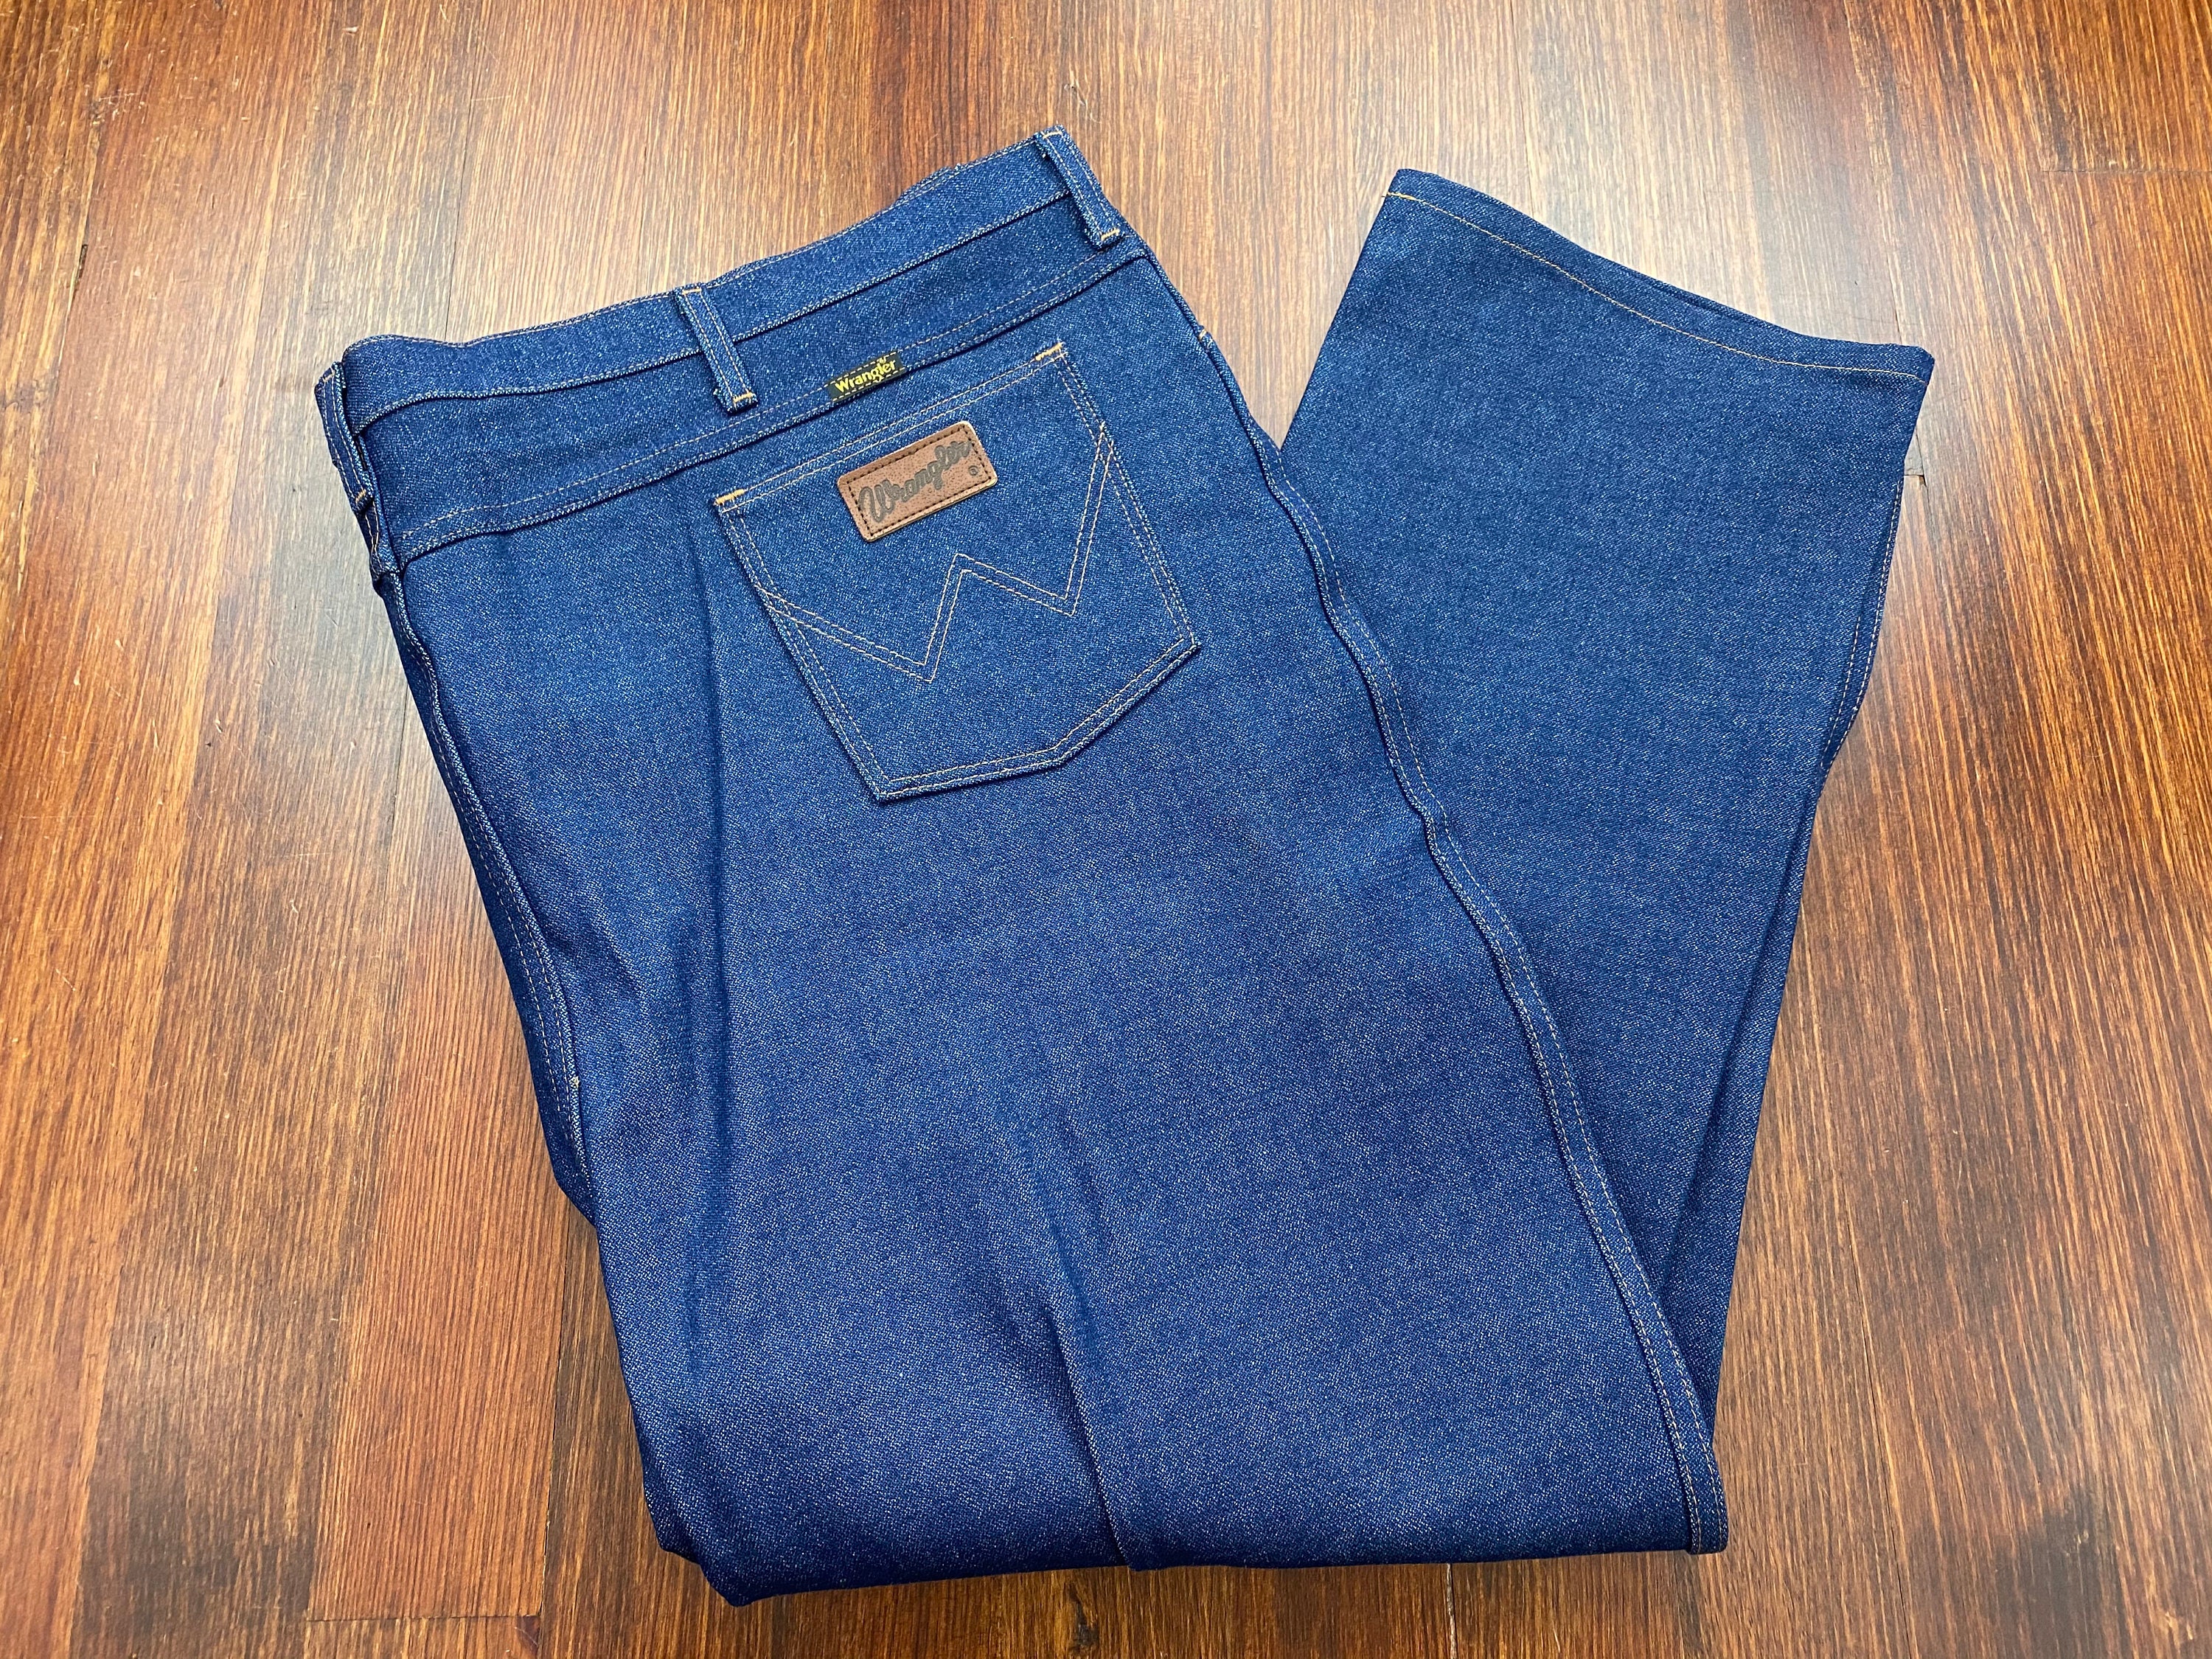 Vintage Wrangler Jeans 80s Wrangler Denim 52 Waist Denim Big - Etsy